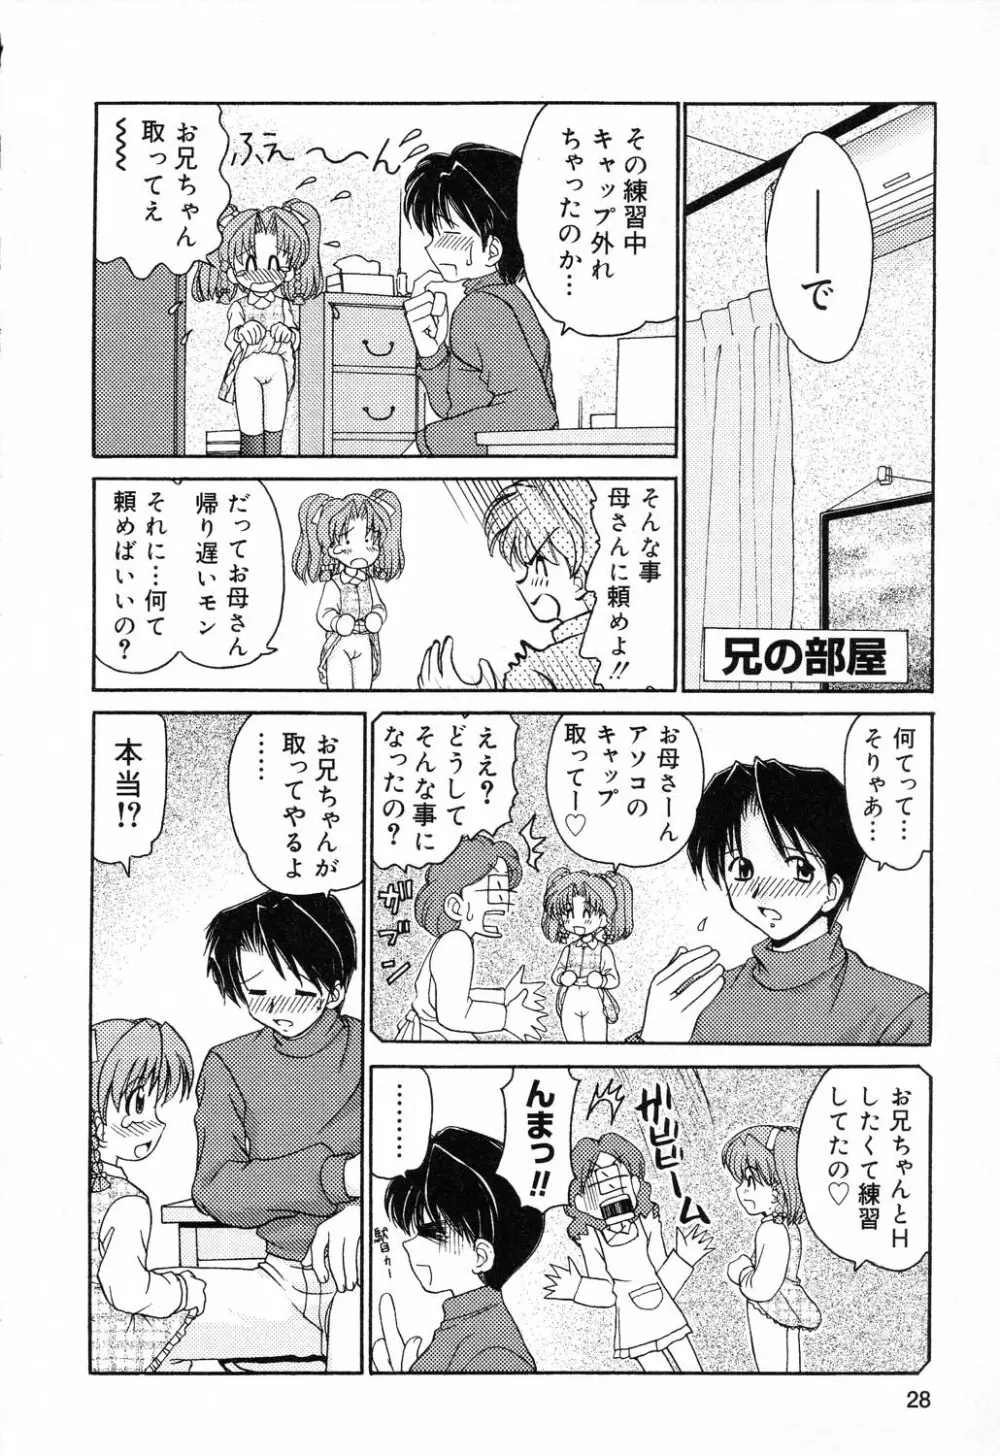 ぴゅあぷちっと Vol.14 29ページ